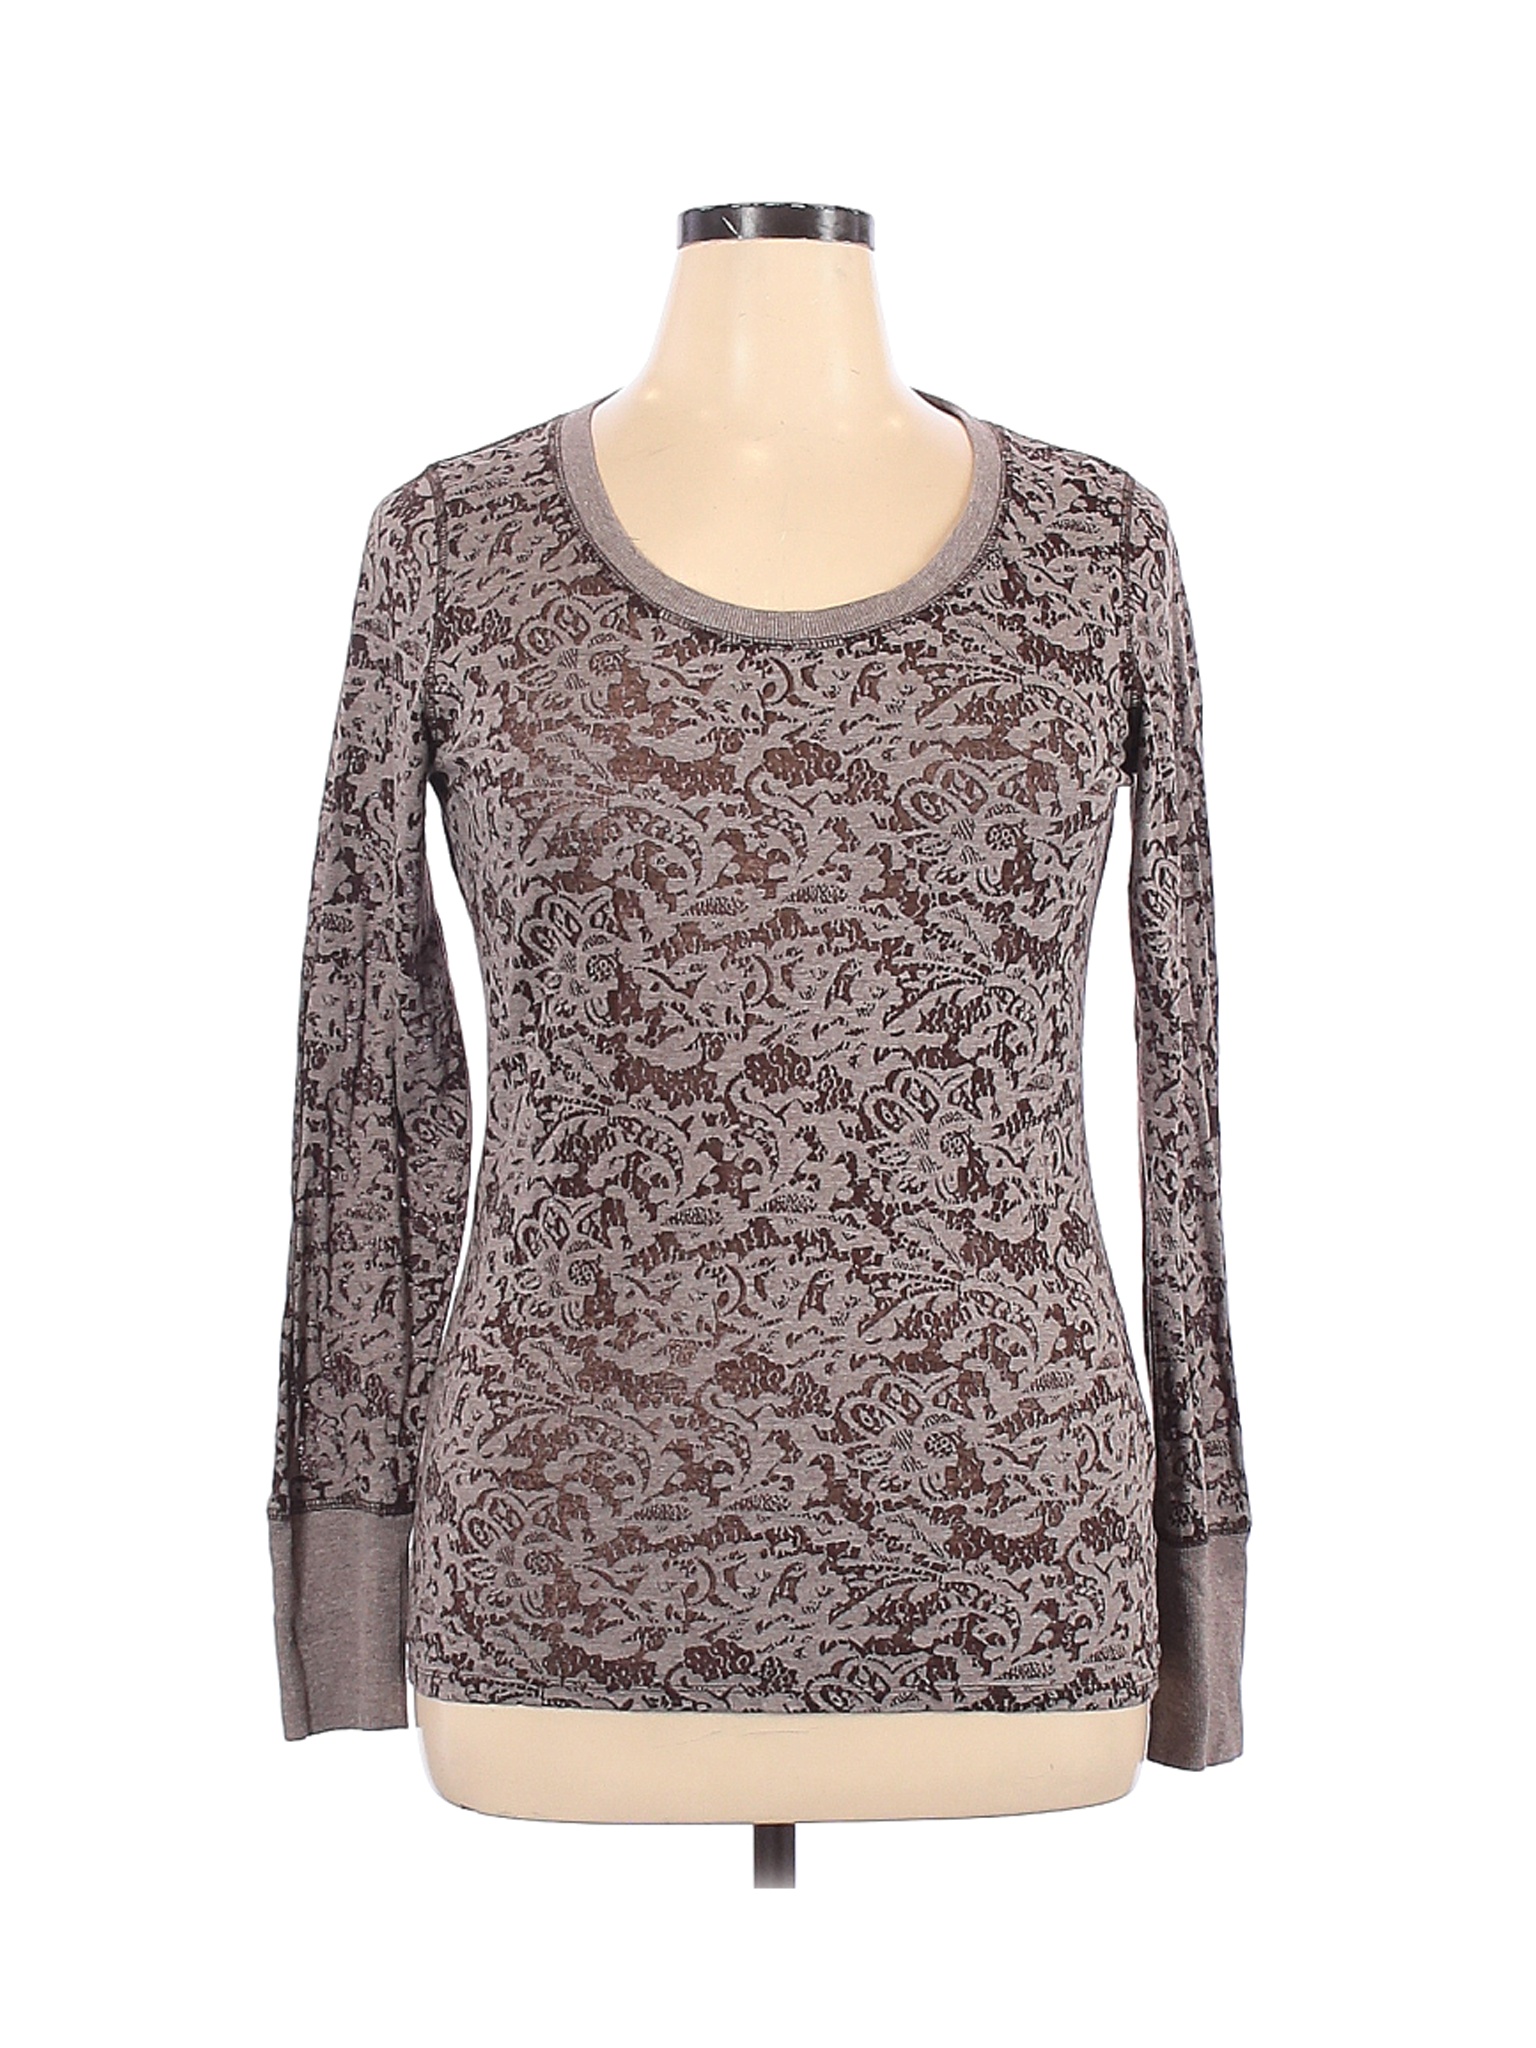 Maurices Women Brown Long Sleeve T-Shirt XL | eBay